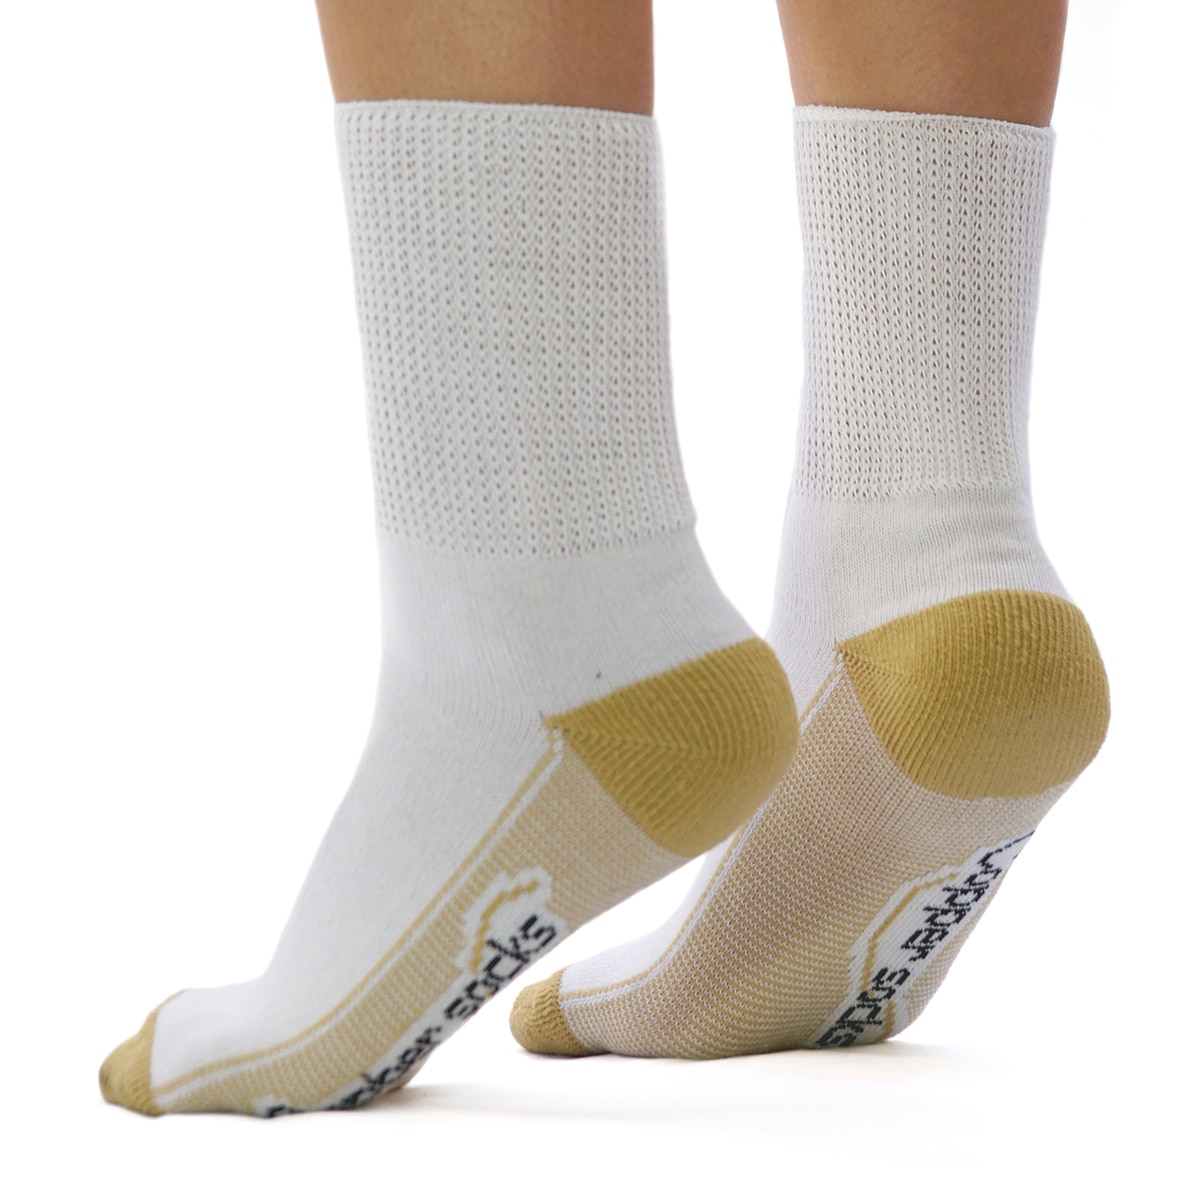 Copper Socks, Calcetines Cortos para Diabéticos (3 Pares) Color Blanco Talla Chica